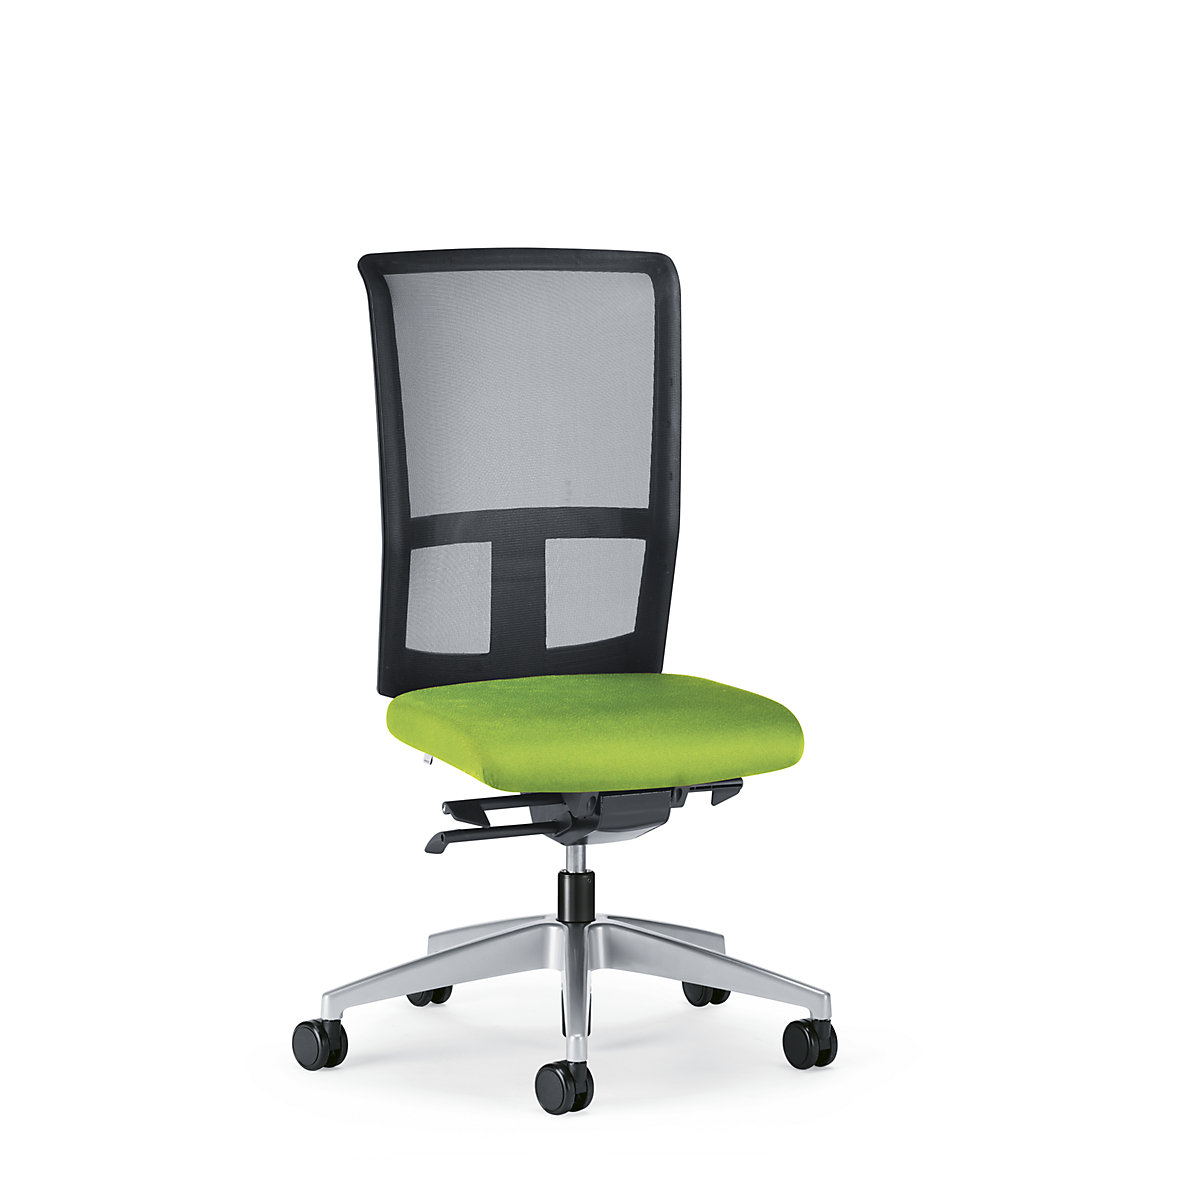 Kancelárska otočná stolička GOAL AIR, výška operadla 545 mm – interstuhl, podstavec briliantová strieborná, s mäkkými kolieskami, žltozelená, hĺbka sedadla 410 mm-1